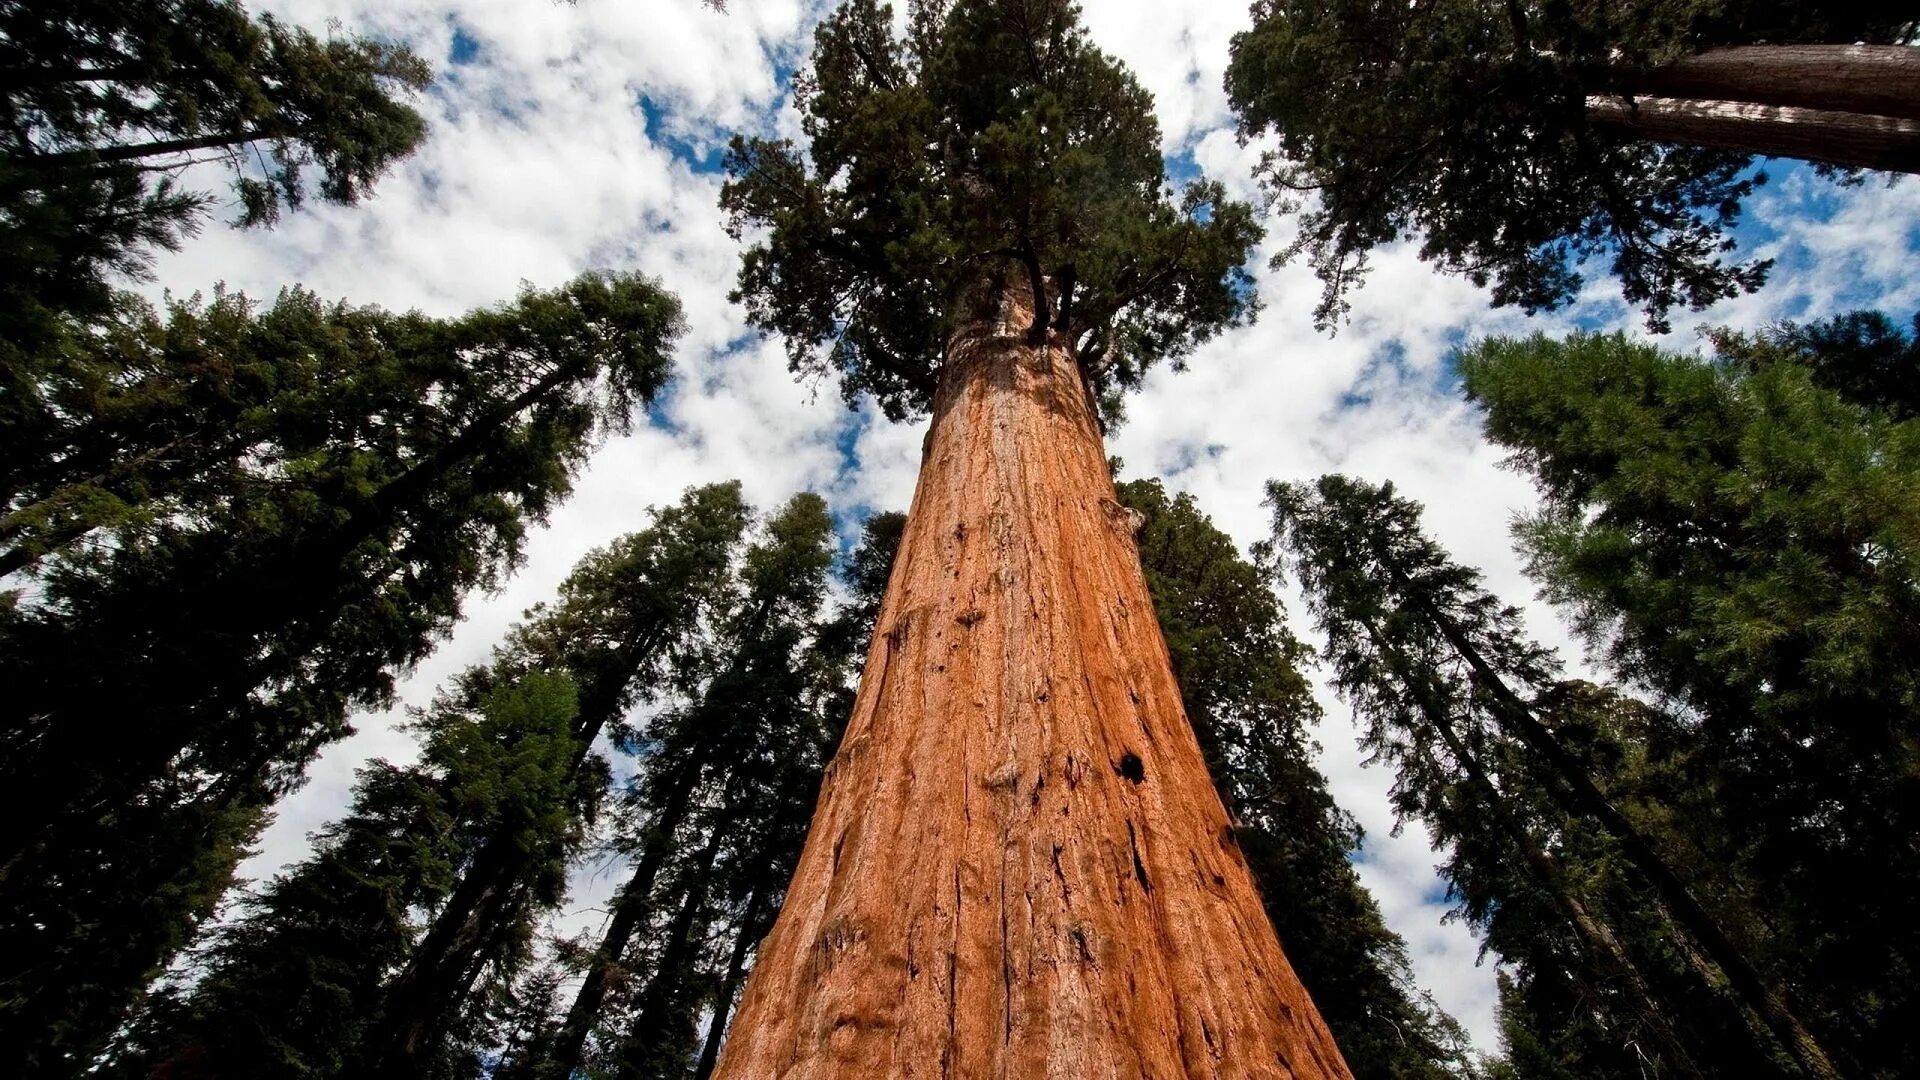 Калифорнийская Секвойя Гиперион. Секвойя дерево. Дерево Гиперион Редвуд. Секвойя вечнозелёная Гиперион.